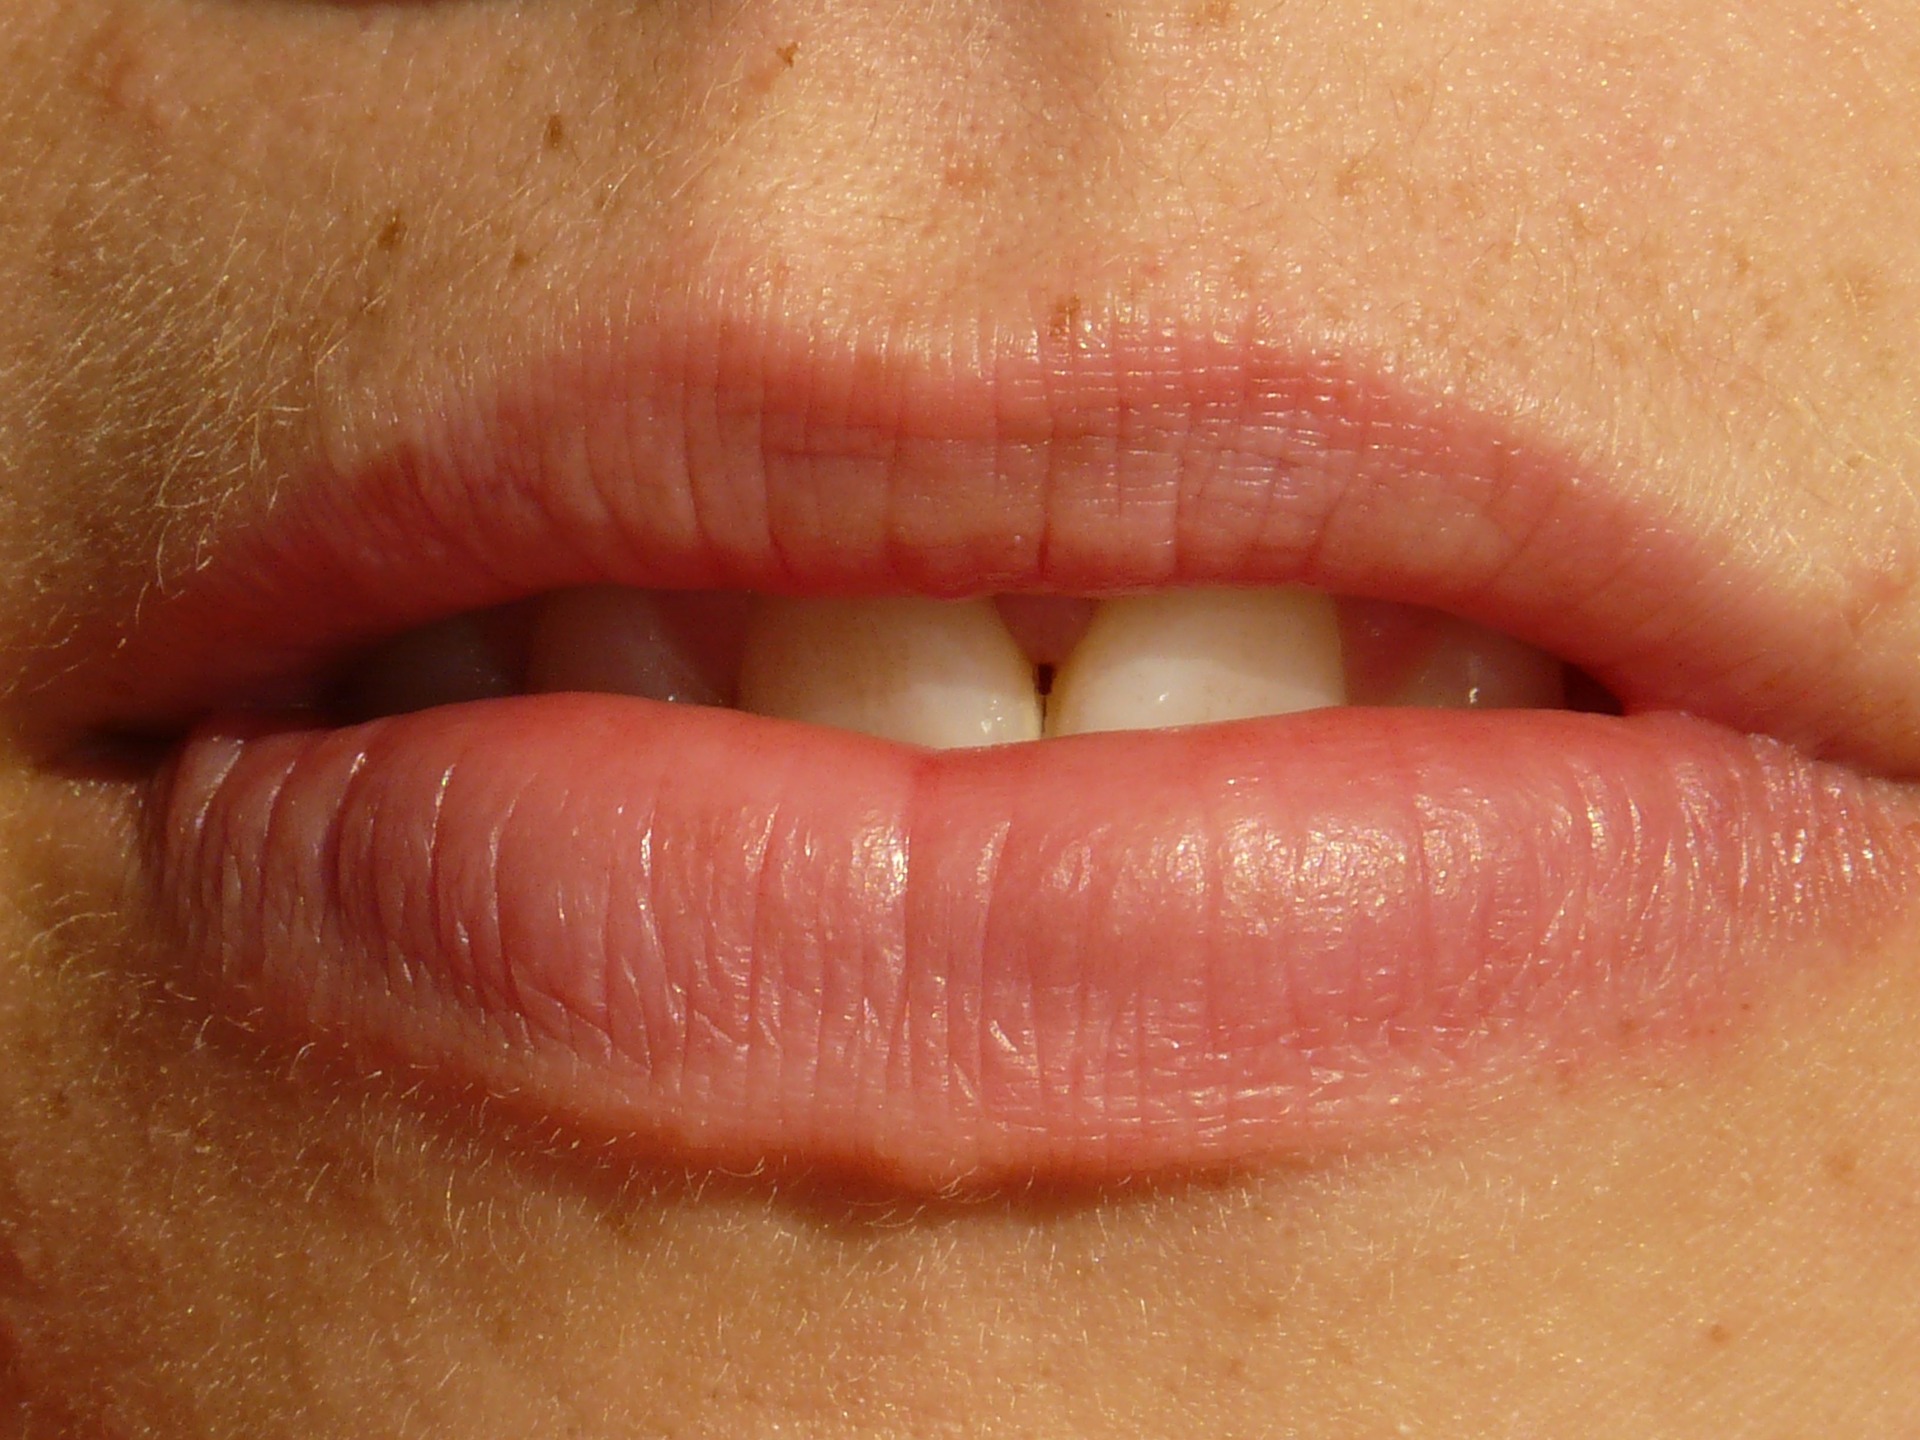 Foto av en avslappnad mun med något särade läppar där framtänderna sticker fram något.